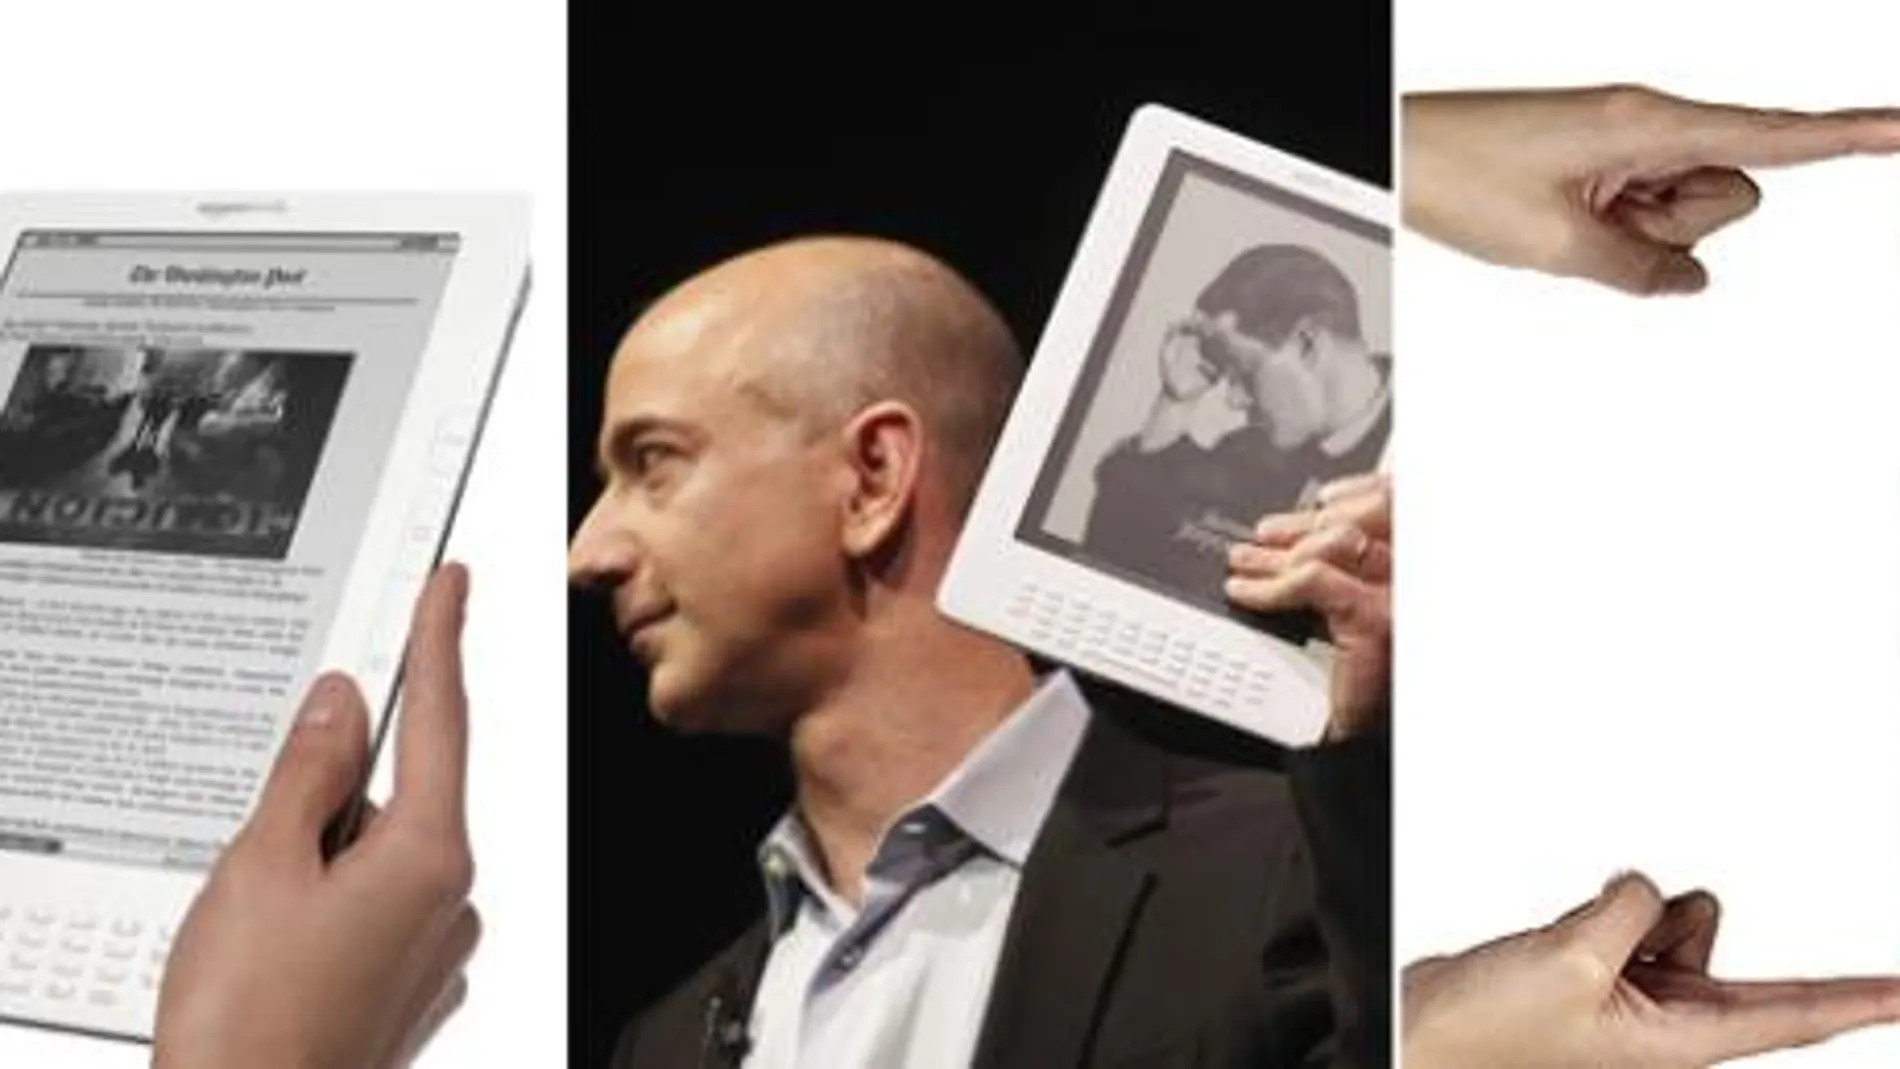 Amazoncom presenta el Kindle DX orientado a libros de texto y periódicos